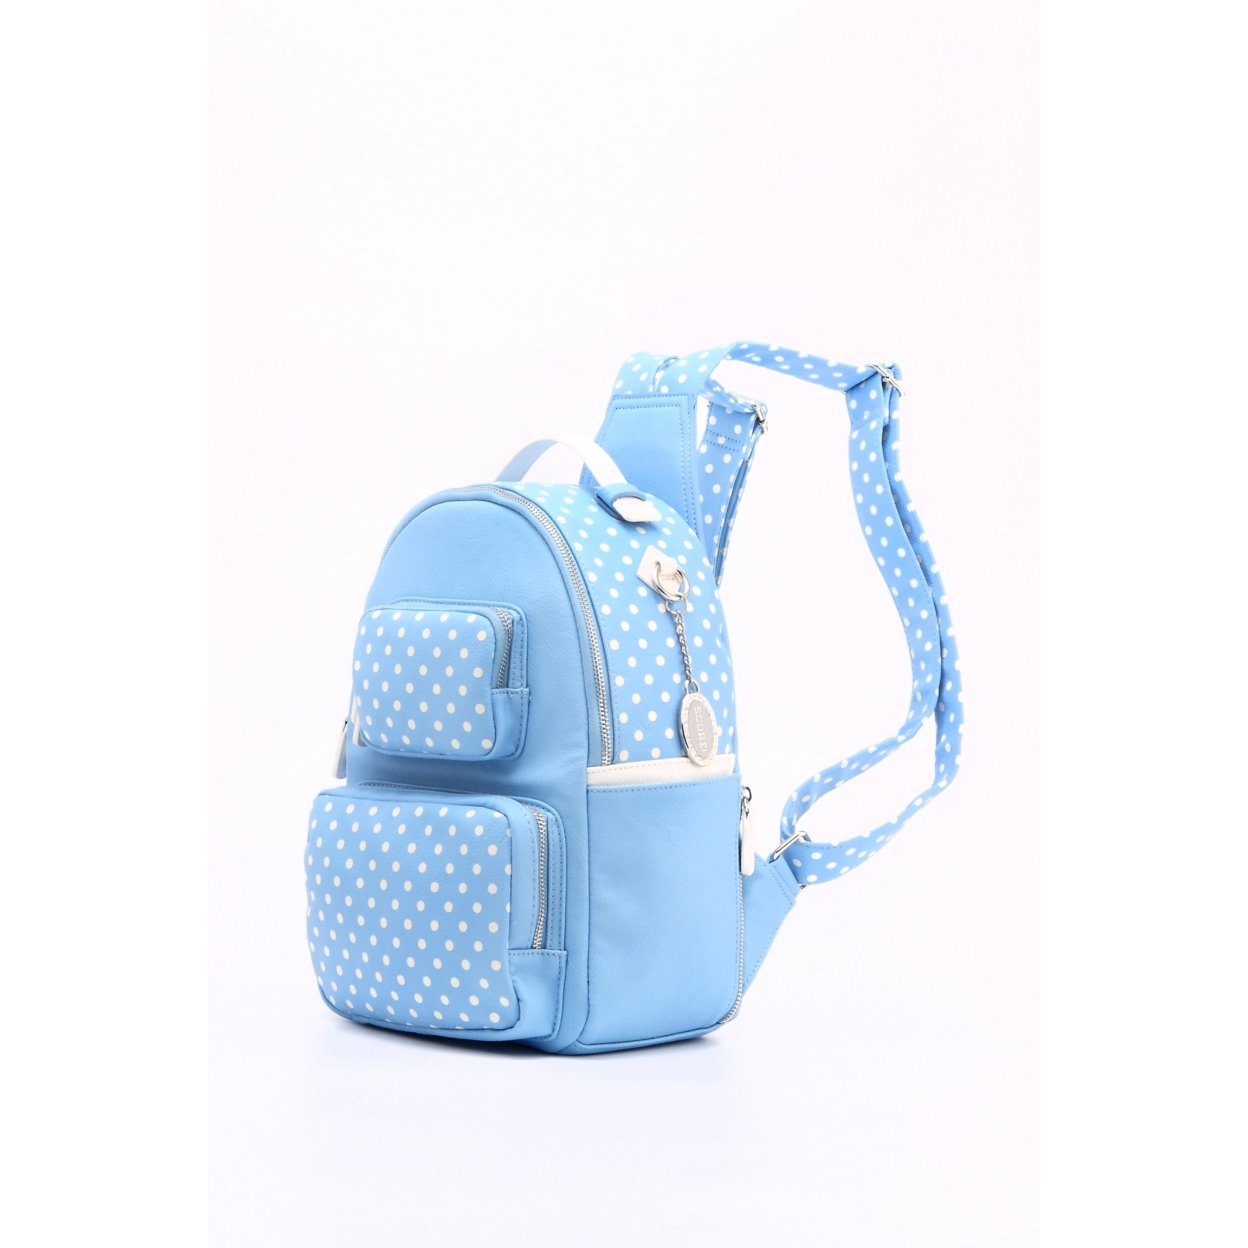 SCORE! Natalie Michelle Large Polka Dot Designer Backpack - Light Blue And White